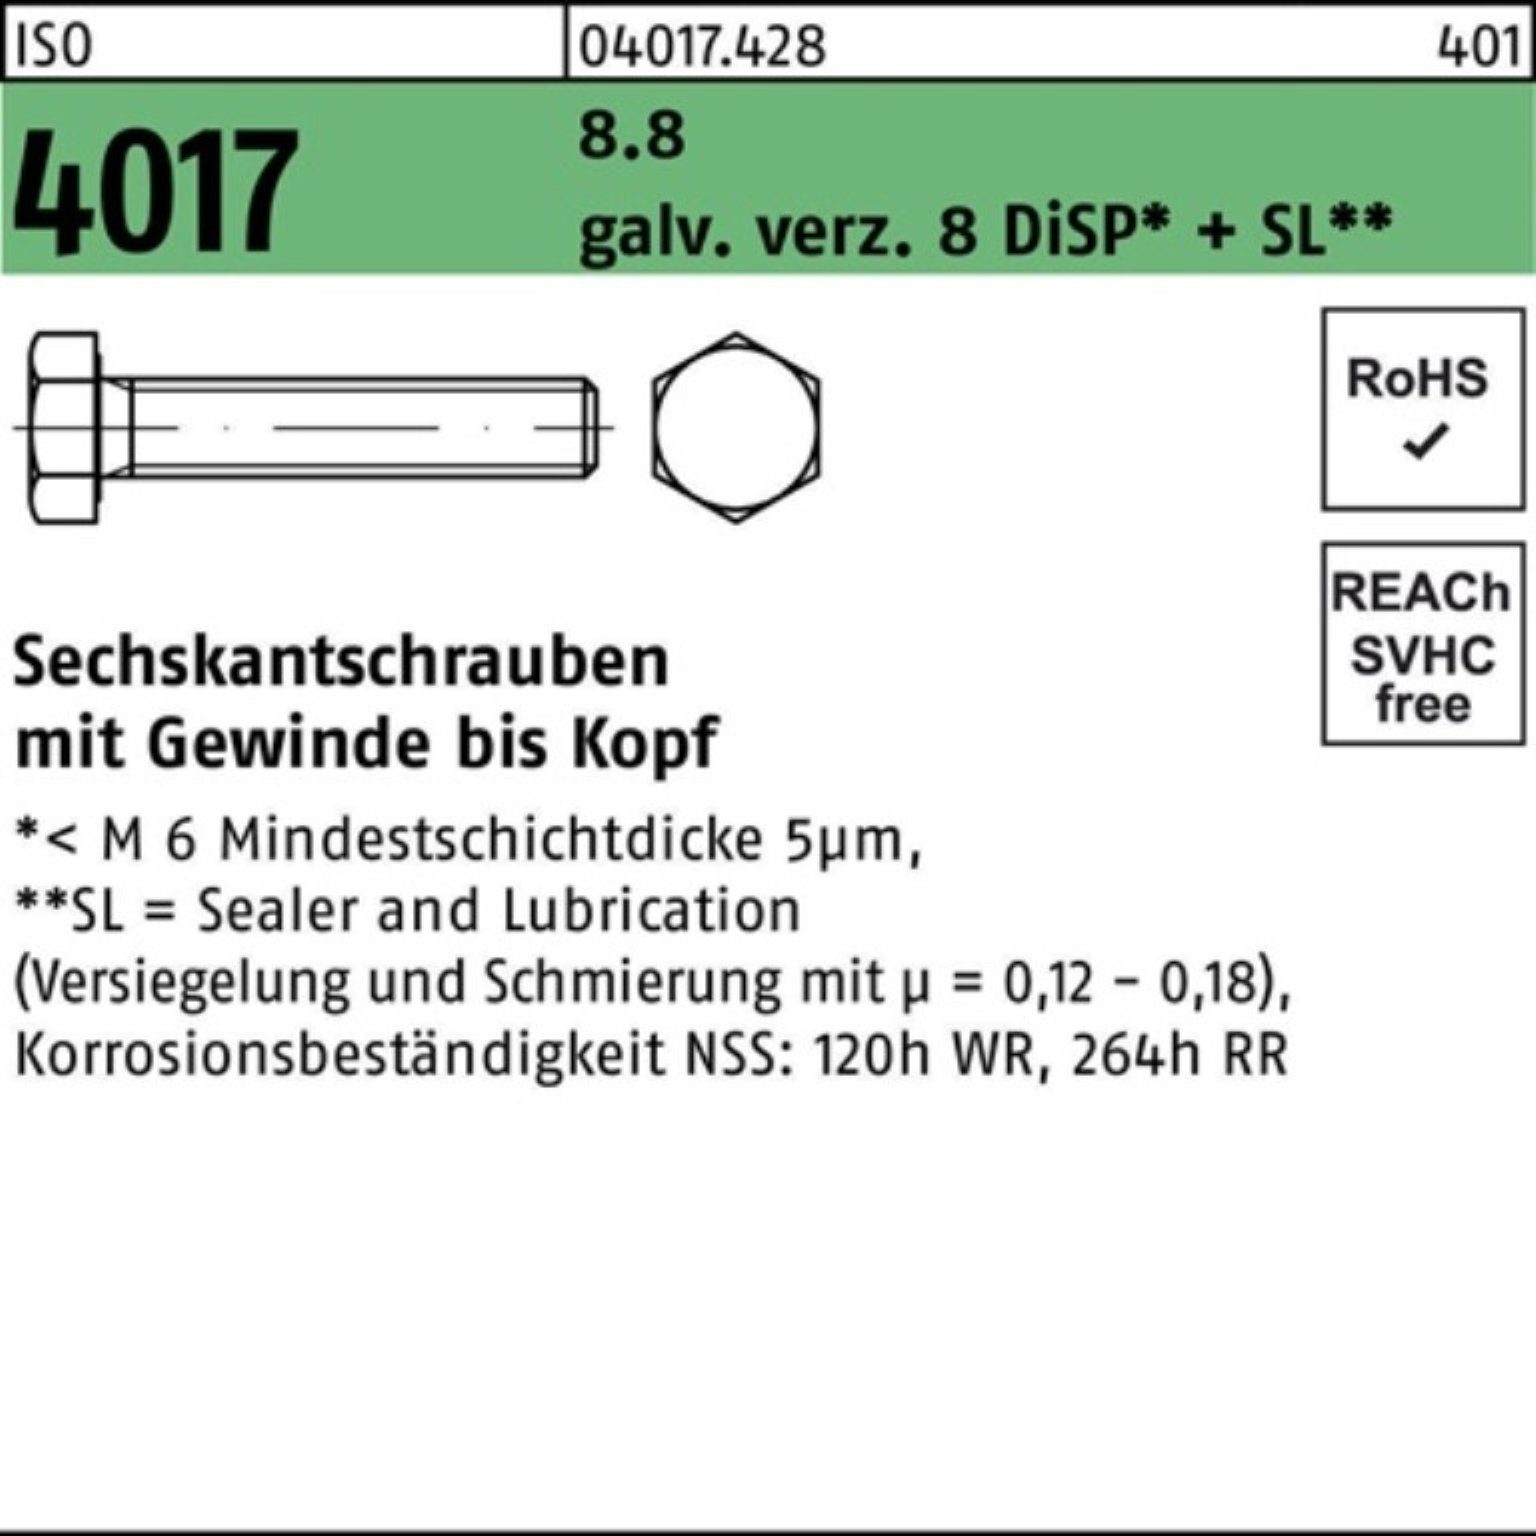 500er M4x Bufab 35 ISO VG DiSP+ 8 Sechskantschraube Pack 8.8 galv.verz. 4017 Sechskantschraube